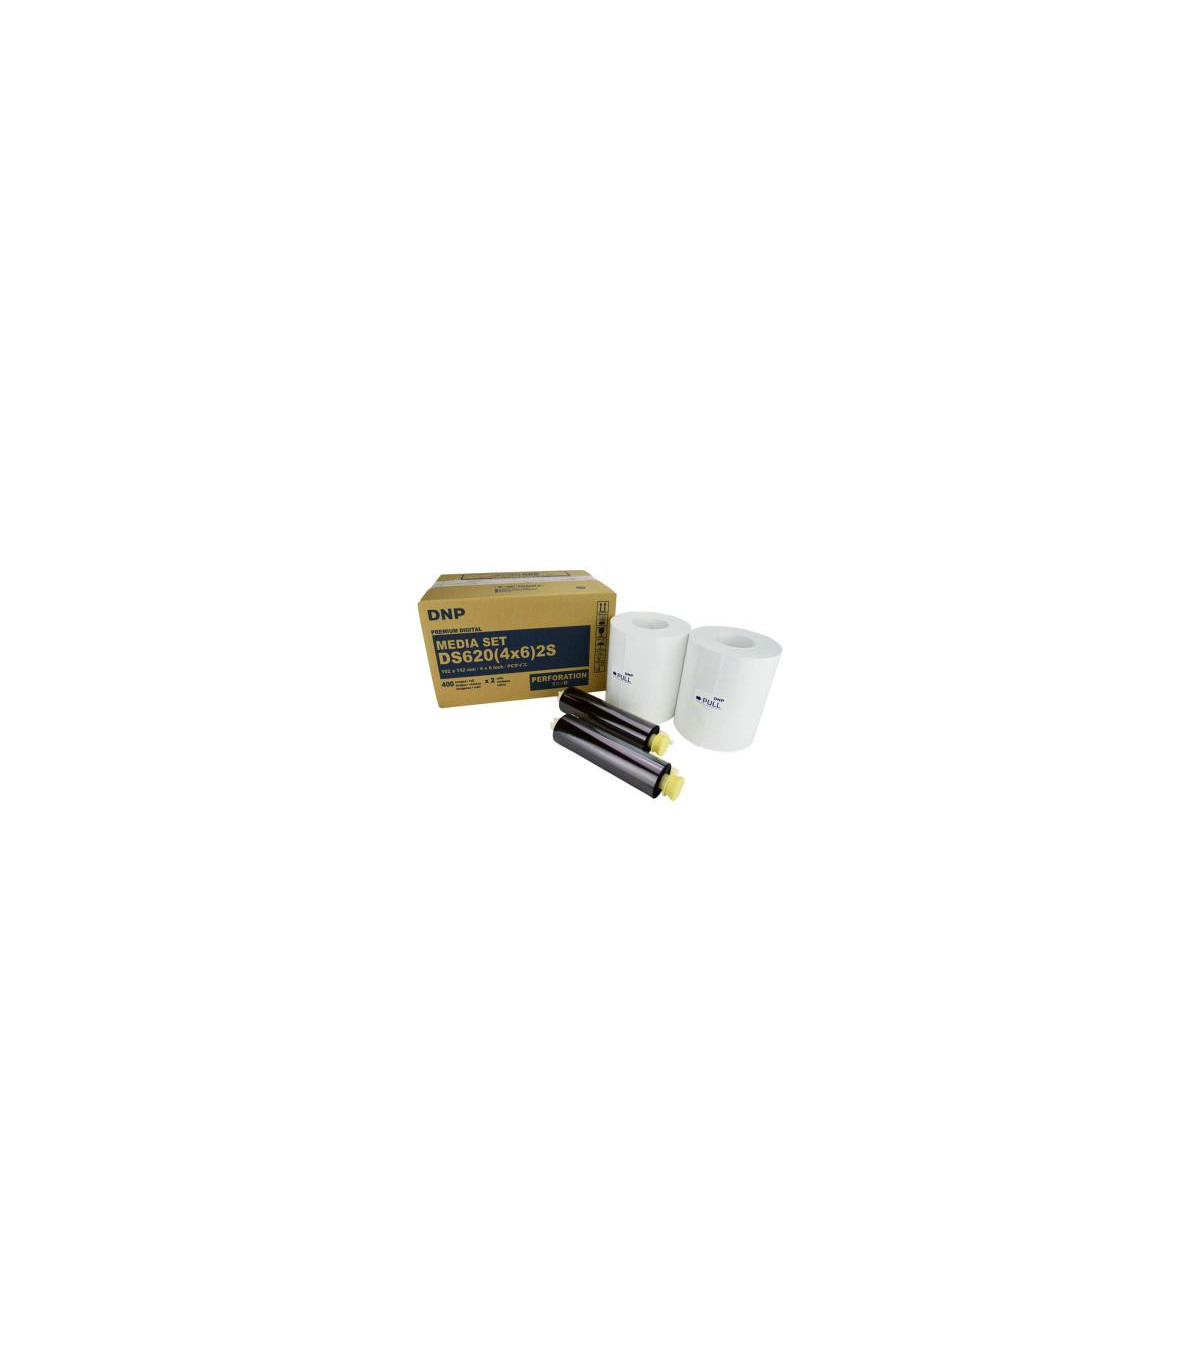 Kit imprimante thermique DNP DS620 + consommable 15x20 (400